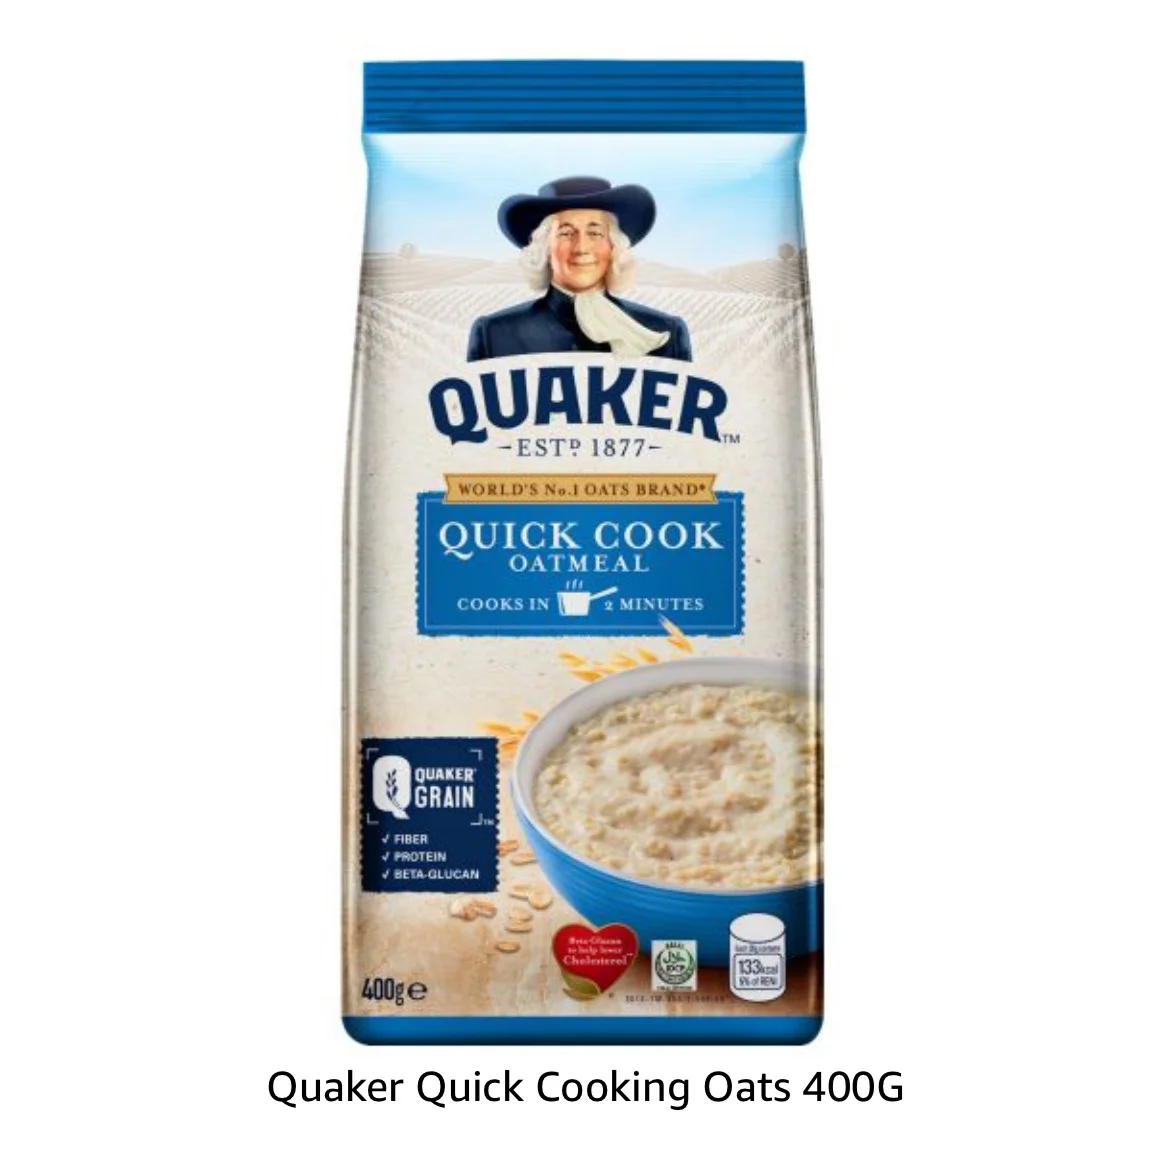 Quaker Quick Cooking Oats 400g